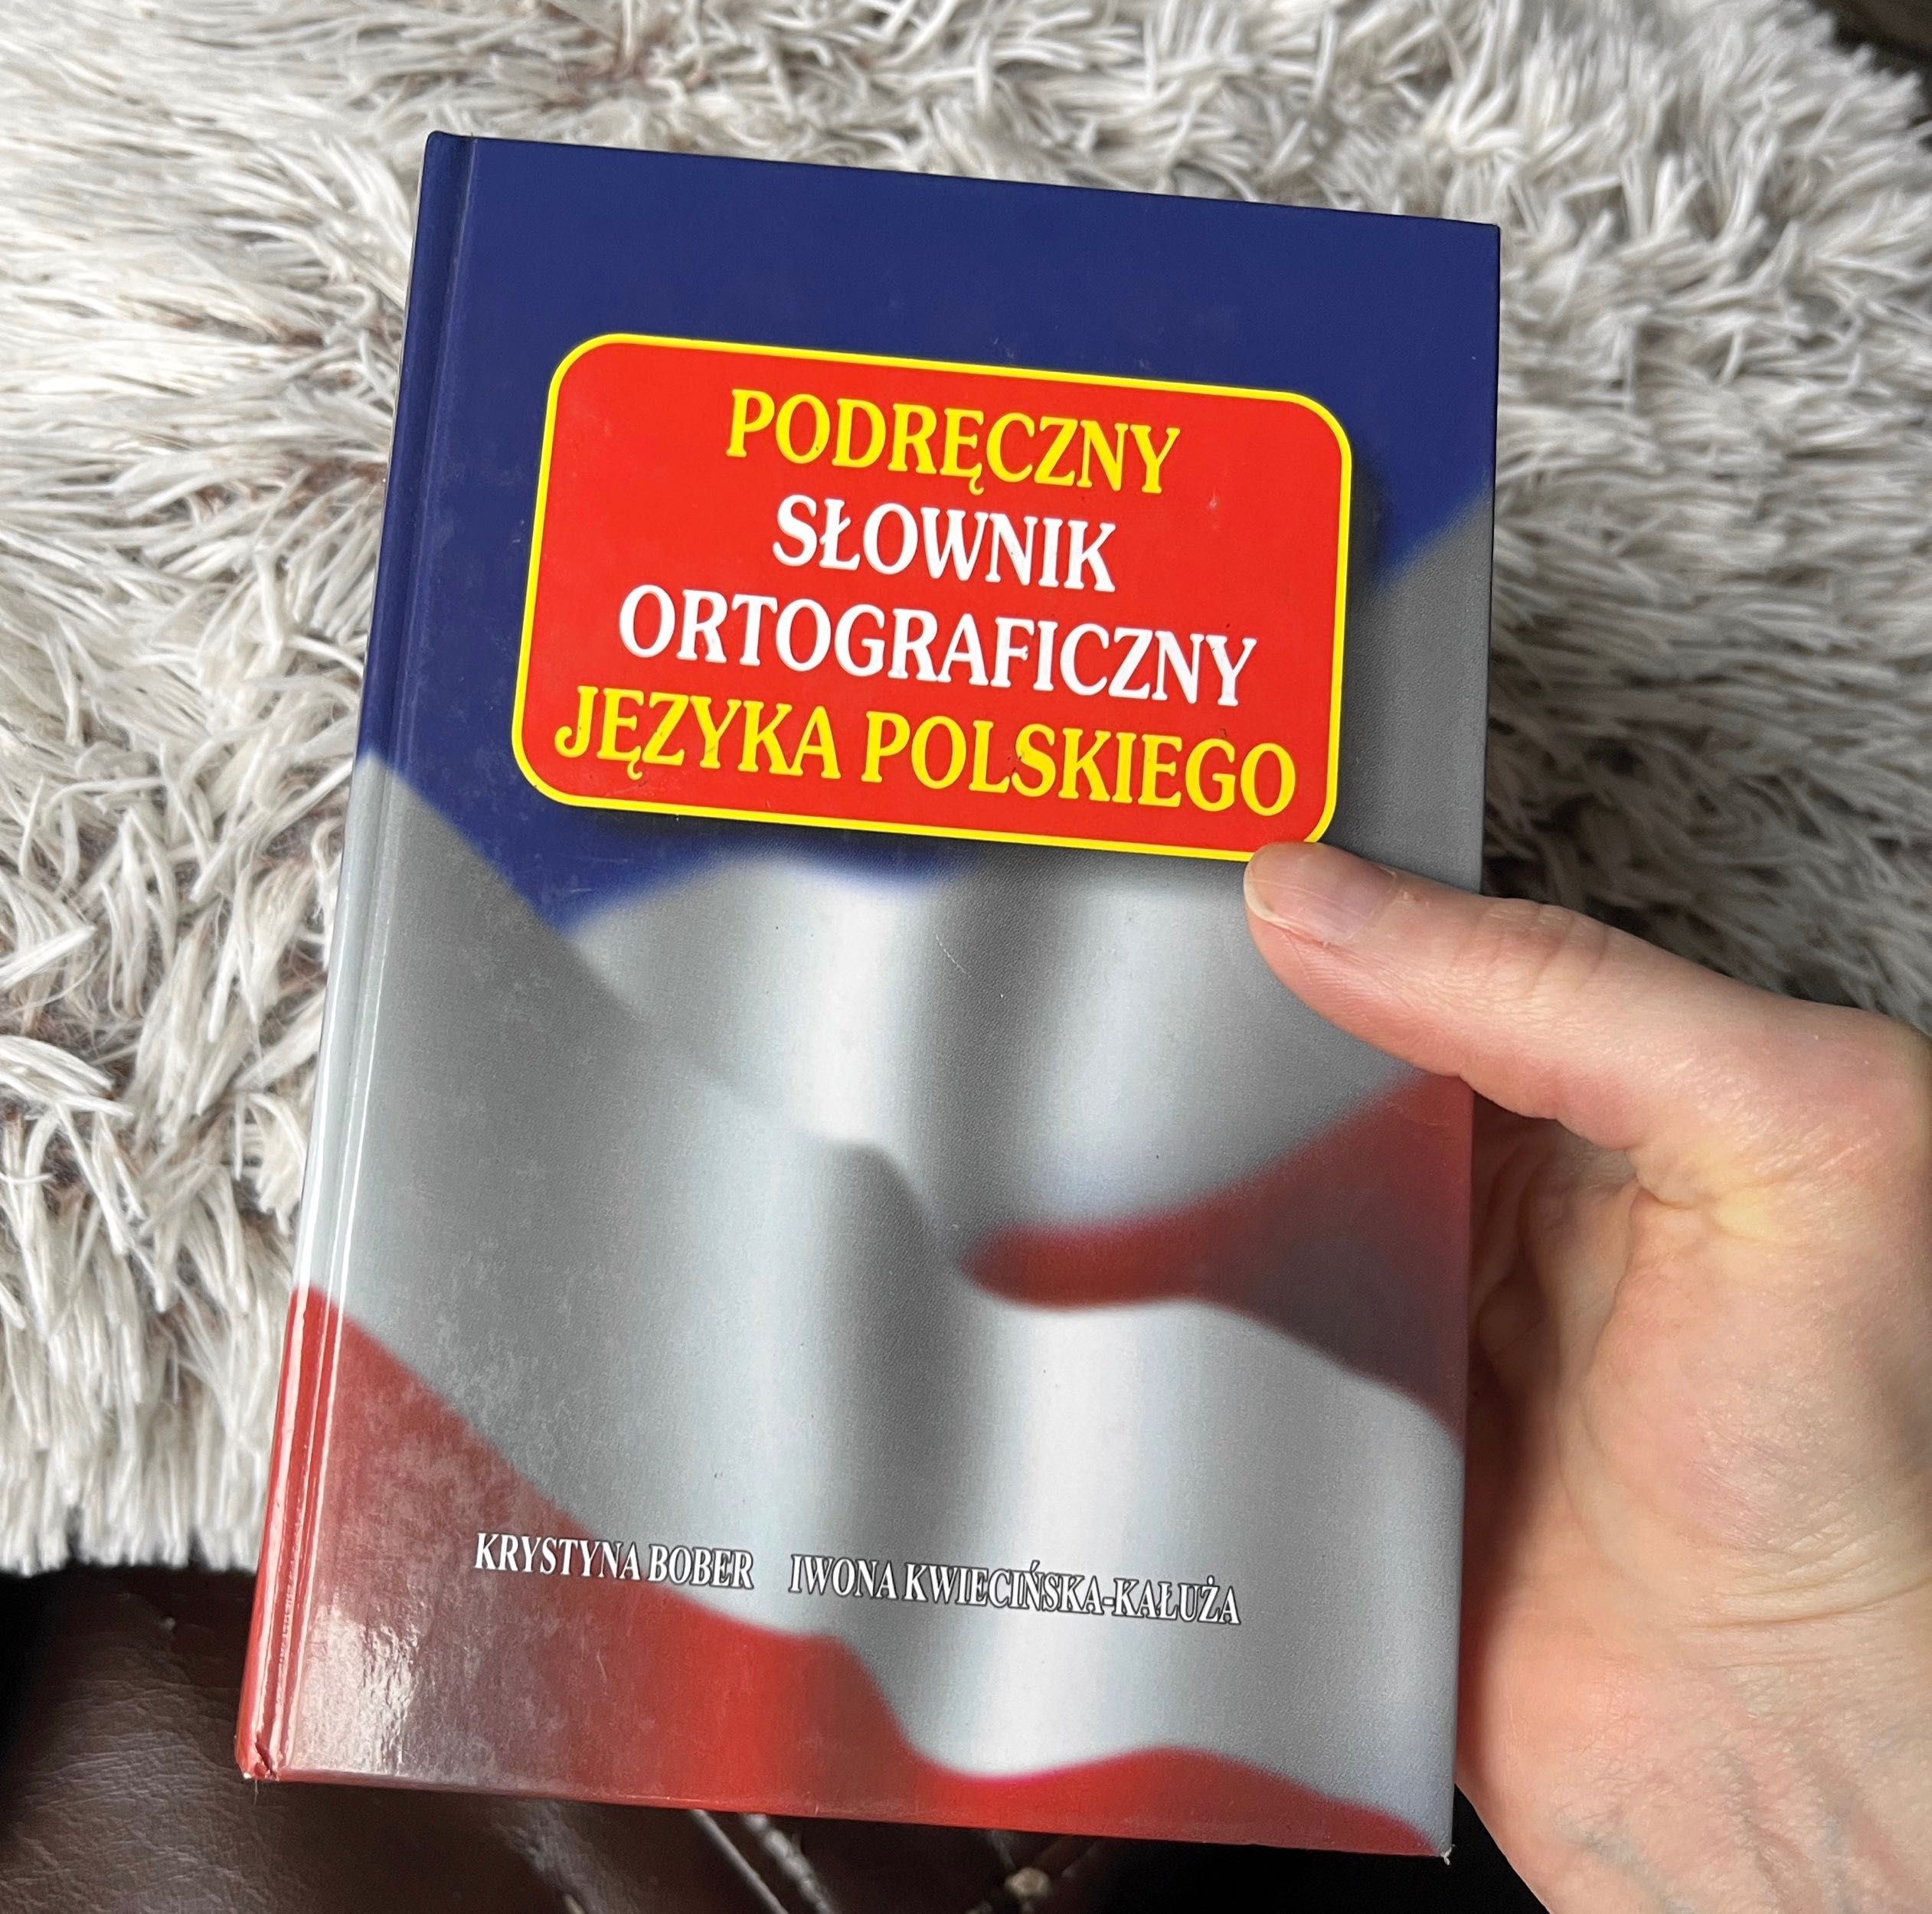 Słownik ortograficzny podręczny książka ortografia